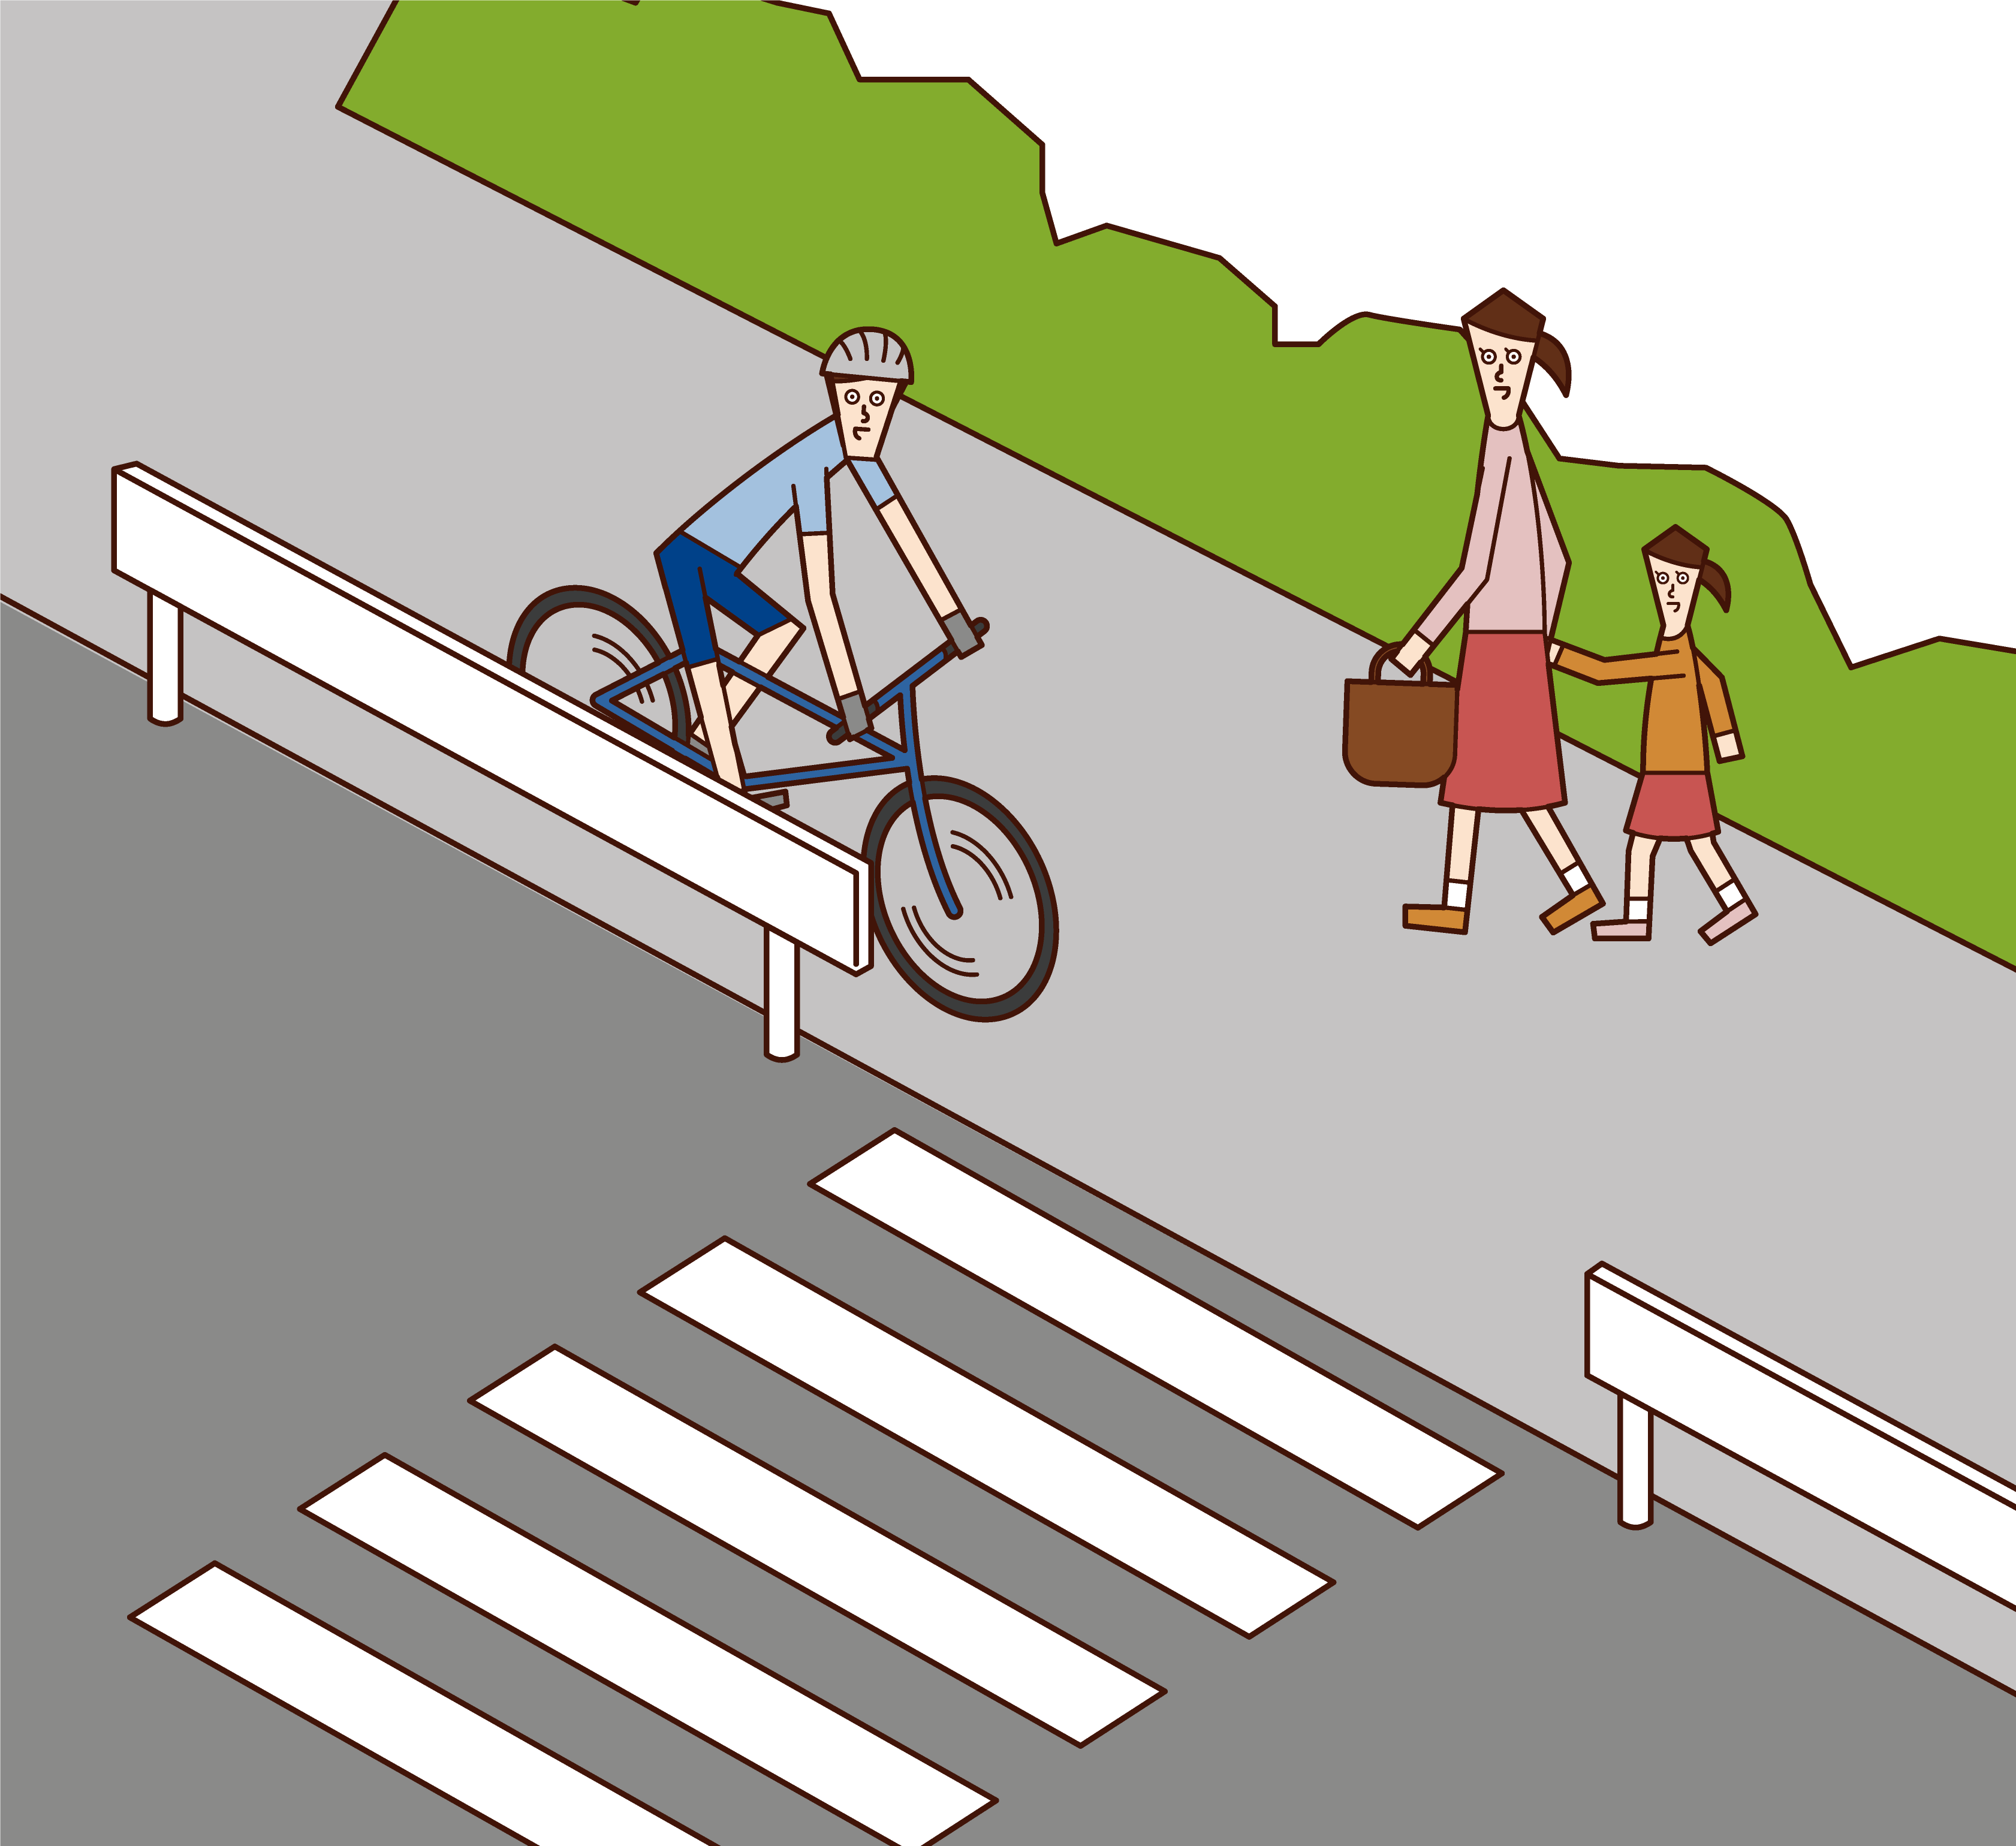 騎自行車(男性)在人行道上緩慢行駛的插圖